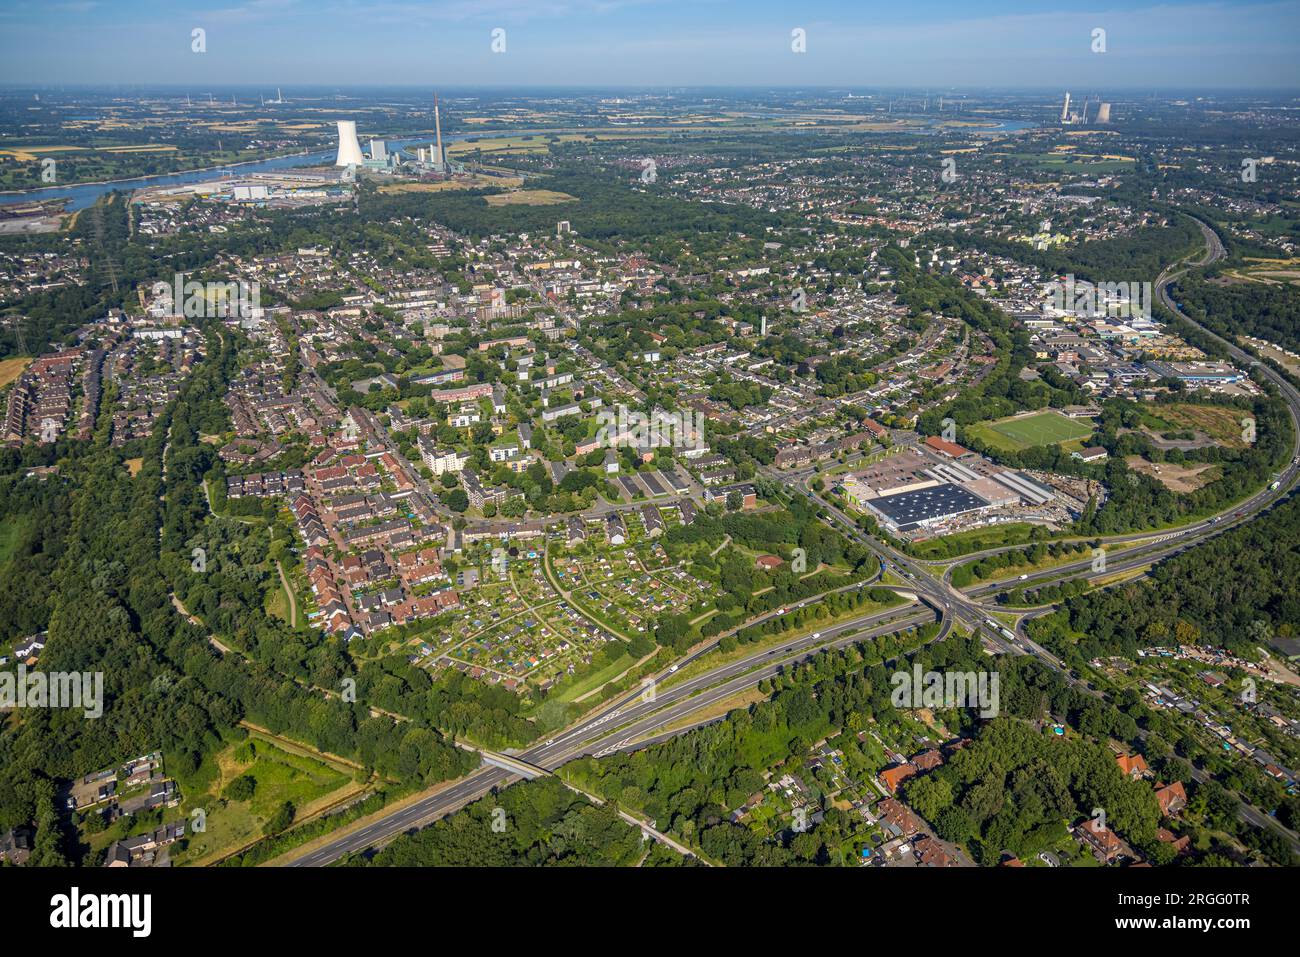 Luftbild, Ortsansicht mit Kleingartenverein Sonnenschein, Aldenrade, Duisburg, Ruhrgebiet, Nordrhein-Westfalen, Deutschland Stock Photo